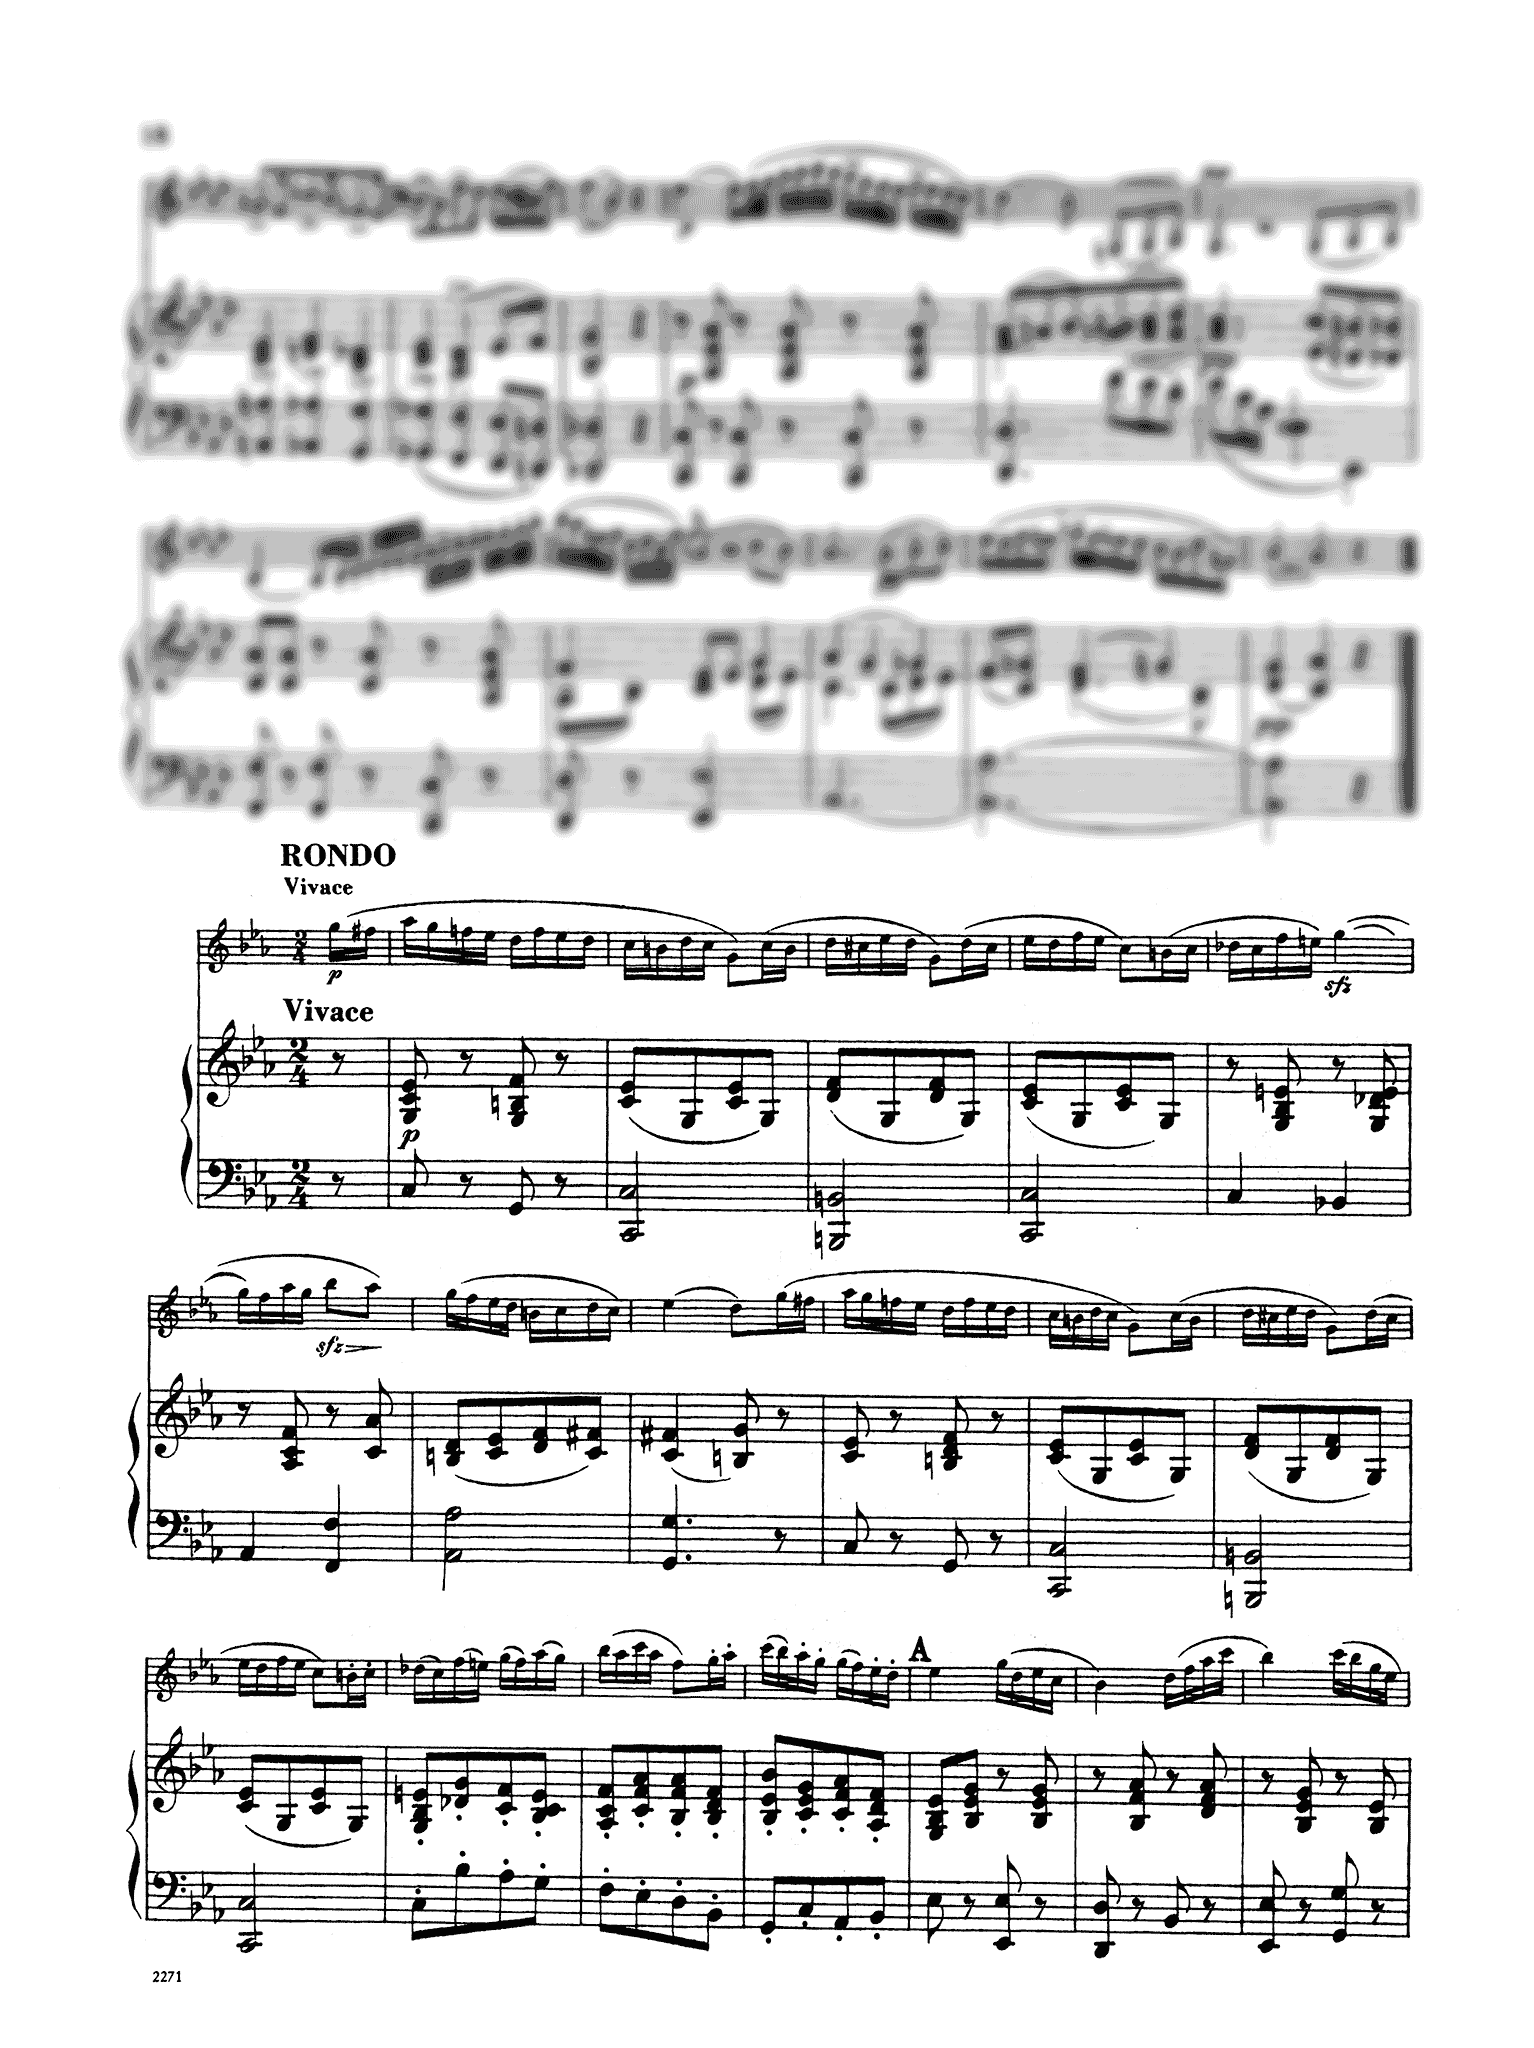 Clarinet Concerto No. 1 in C Minor, Op. 26 - Movement 3